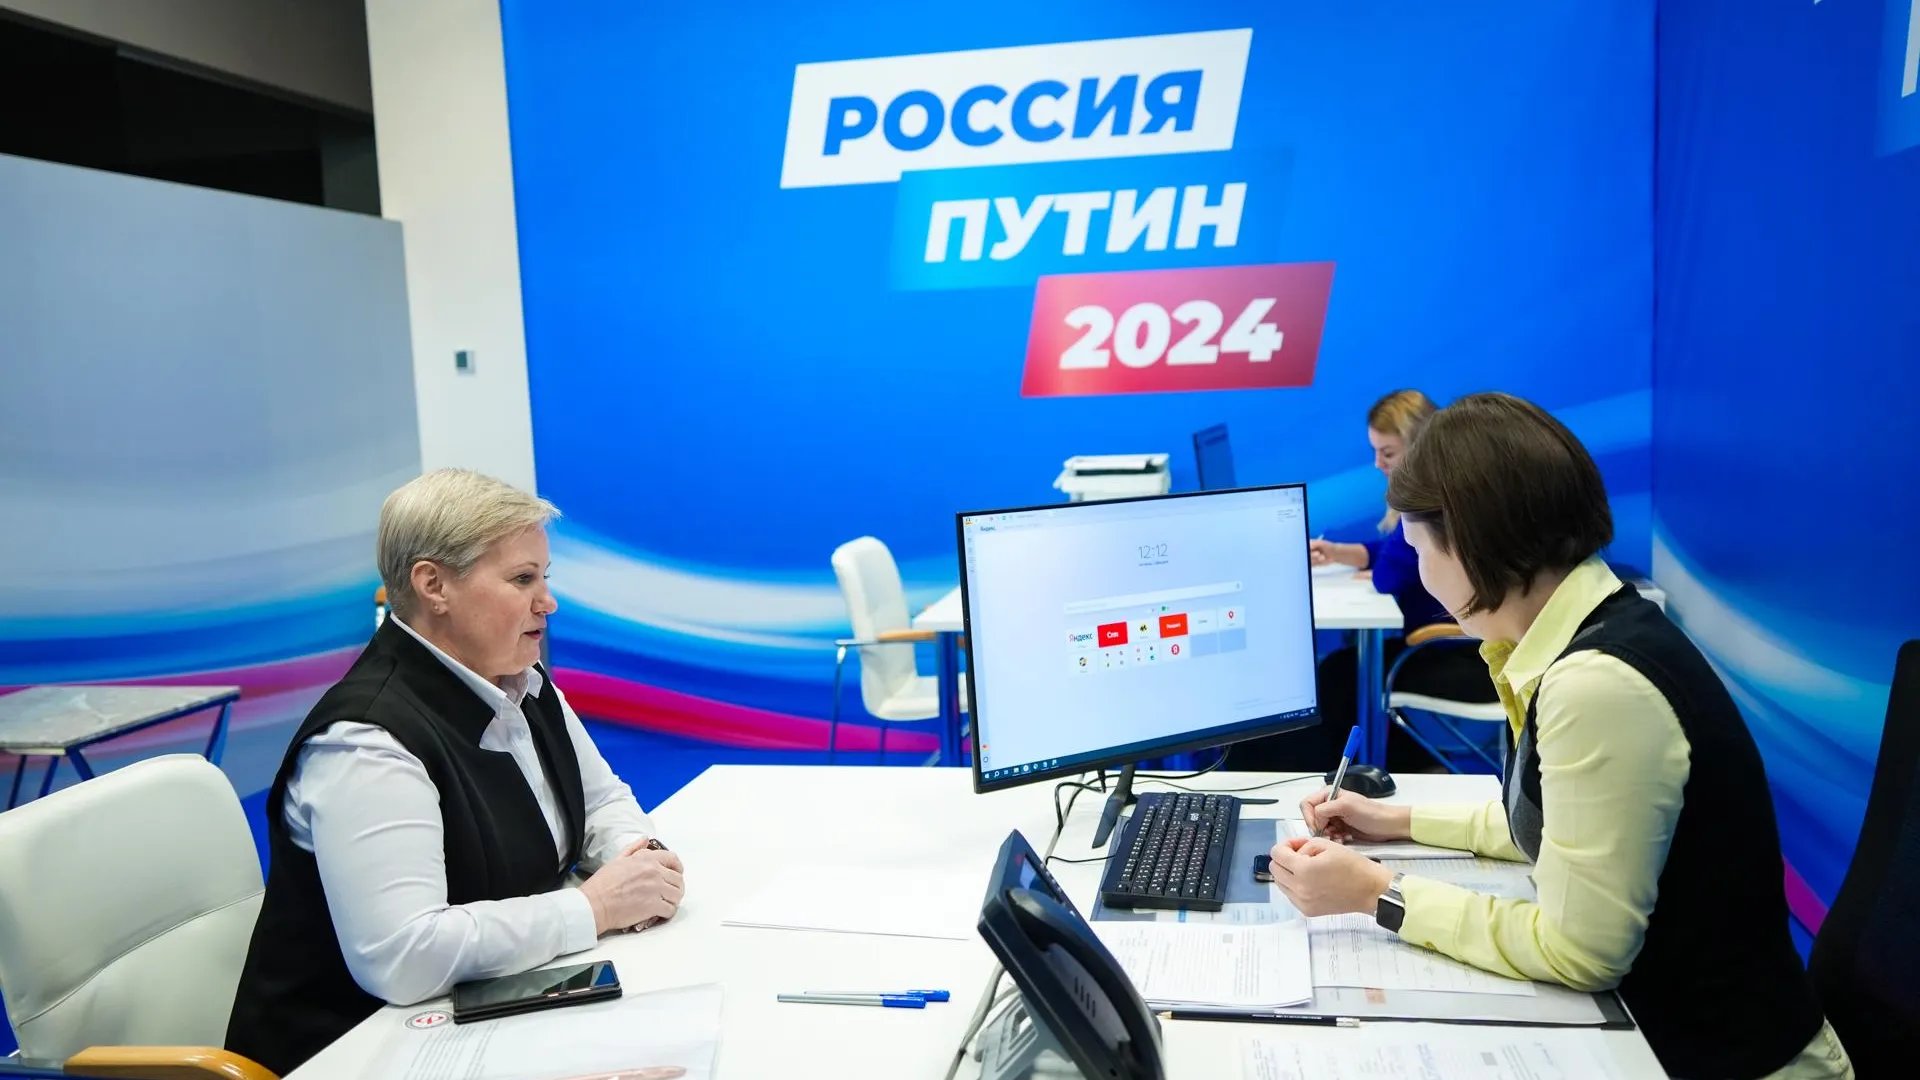 Жители Подмосковья отправили инициативы в приемную кандидата в президенты Путина